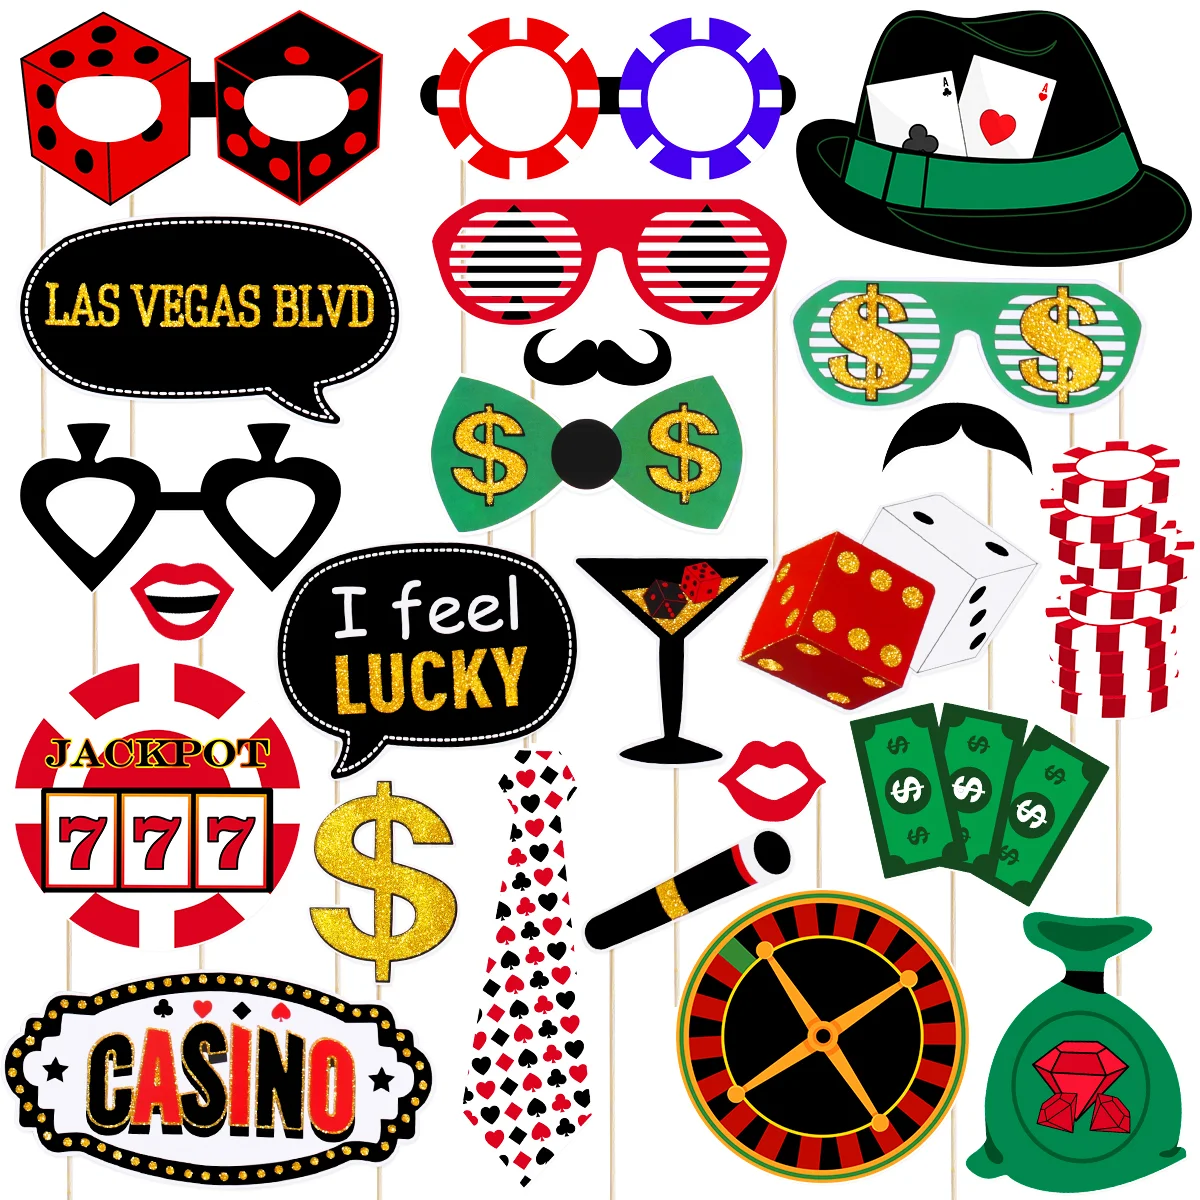 

Фотообои с изображением казино, реквизит для фотобудки в Вегасе, сувениры на тему Лас-Вегаса, принадлежности для селфи, украшение для ночной фотобудки, блеск на день рождения